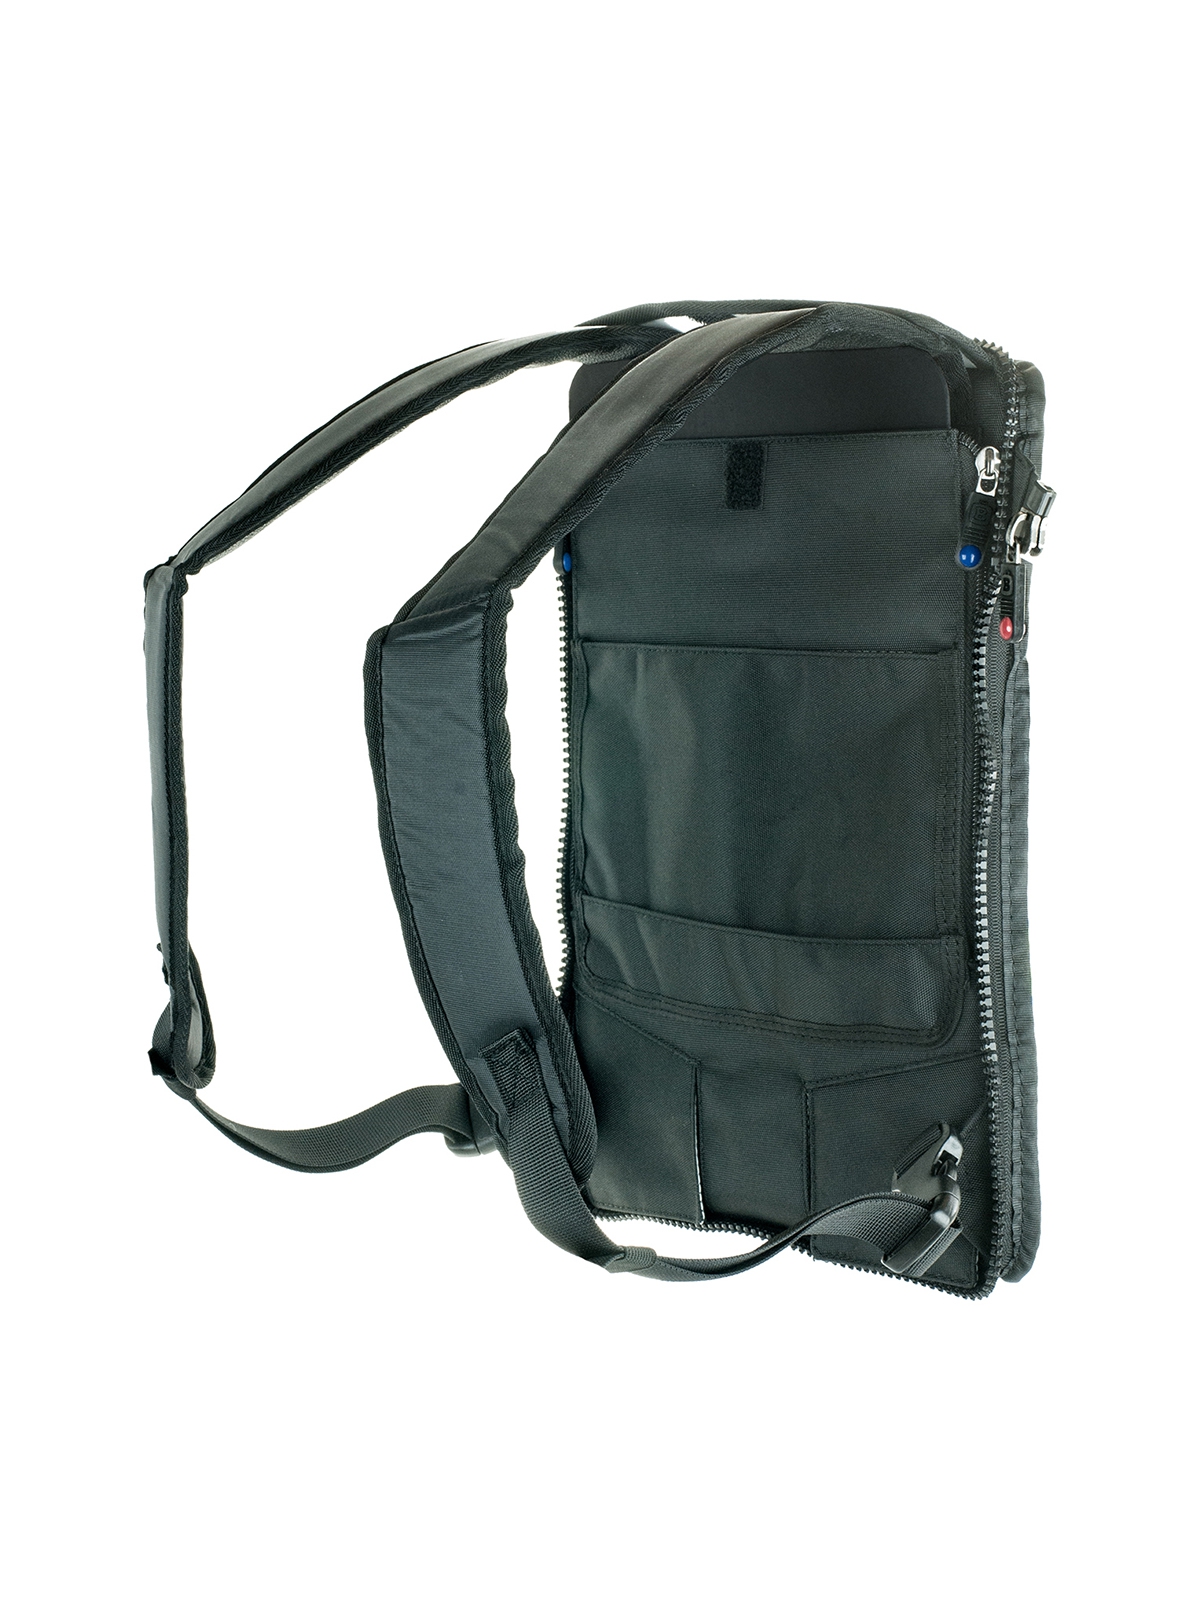 BrightLine FLEX Pack Cap Rear (KCR) - Endstück mit Rucksackgurten für B0-, B2- oder B4-Taschen